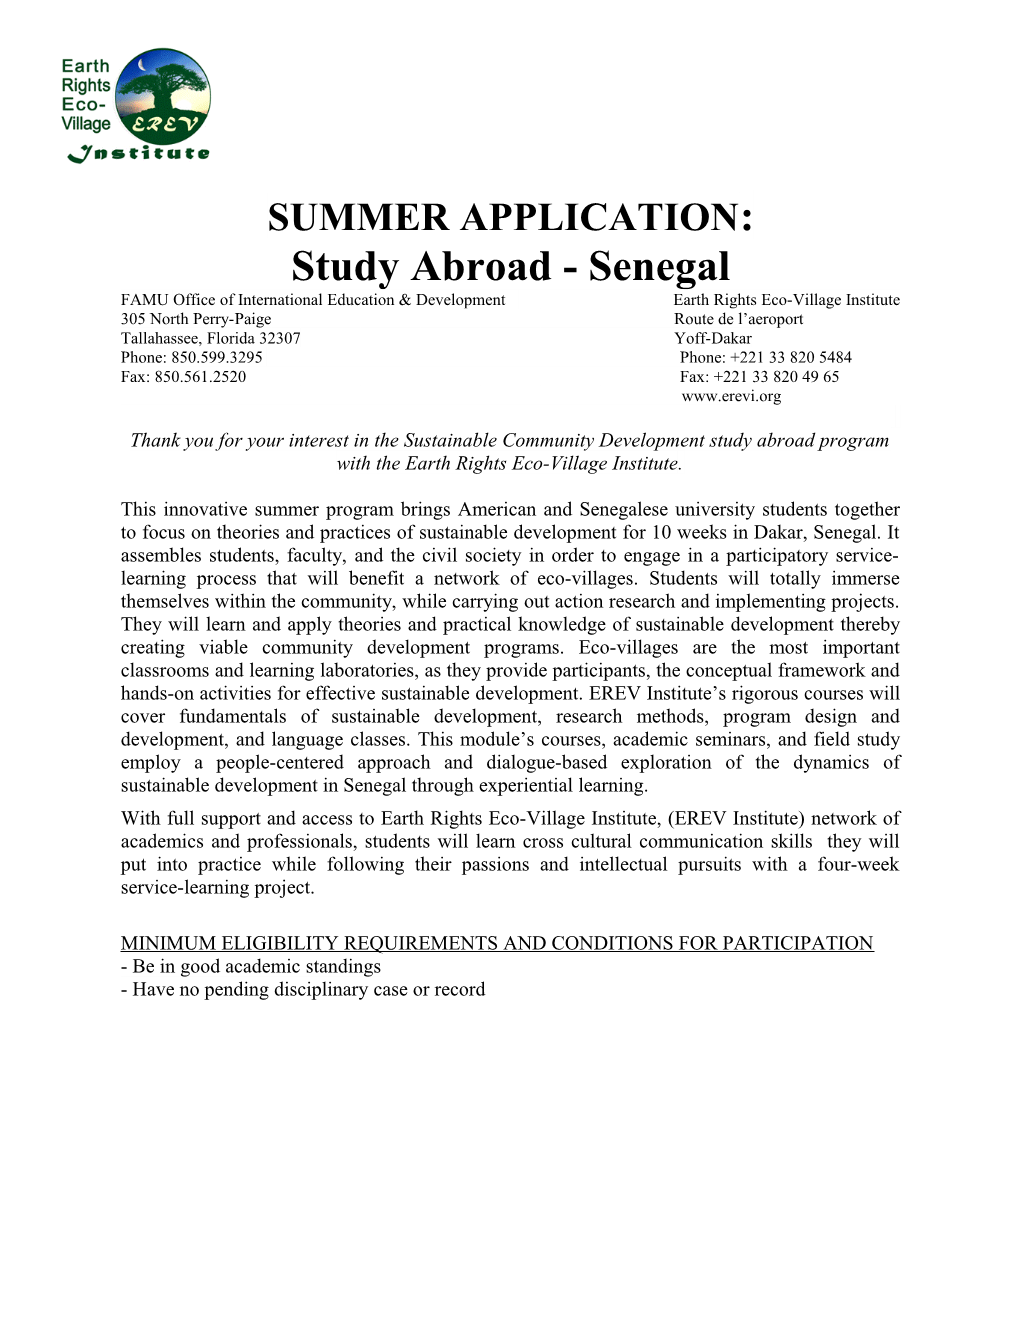 Summer Application